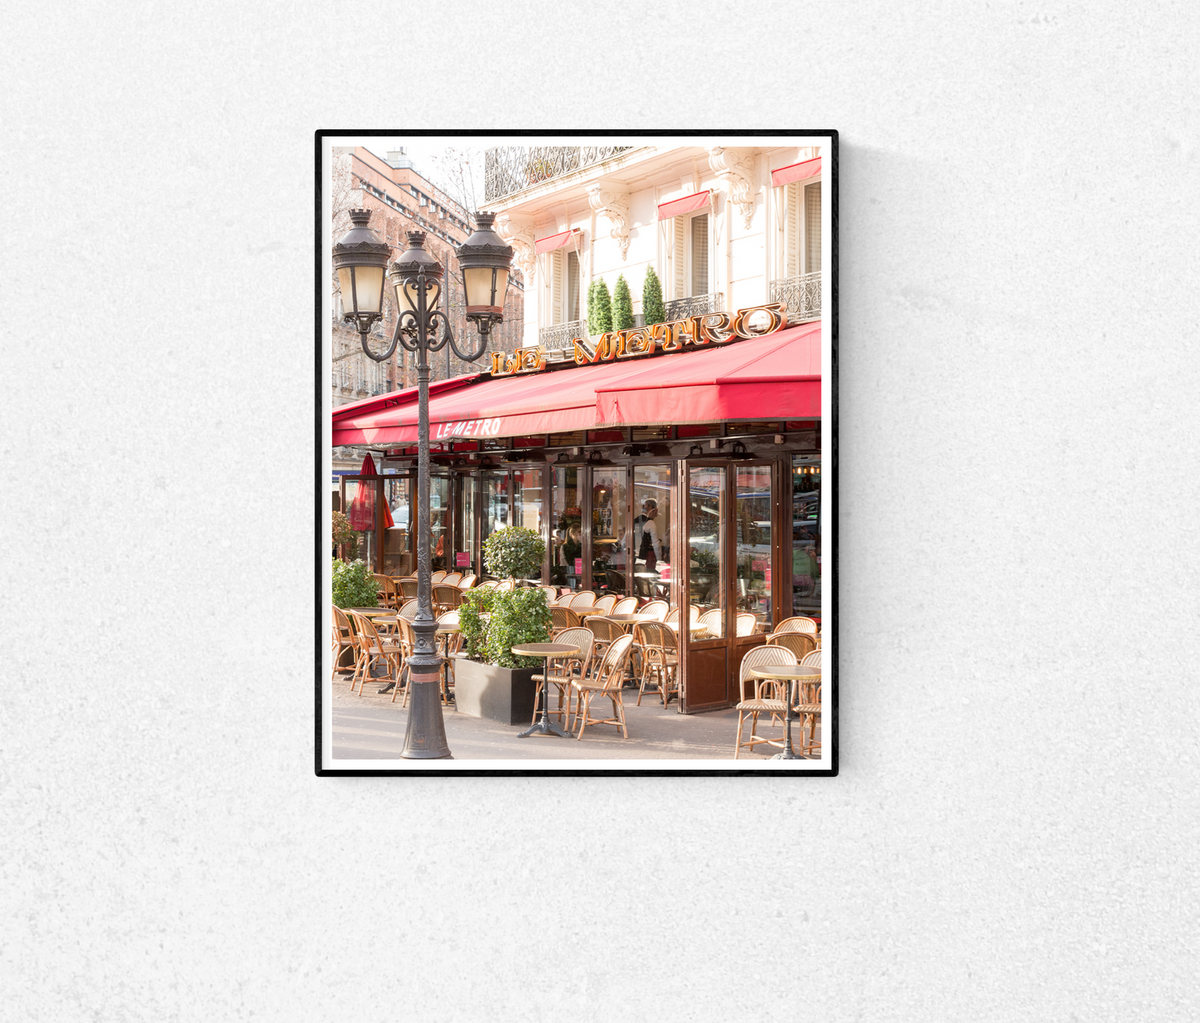 Paris Café on the Left Bank - Every Day Paris 